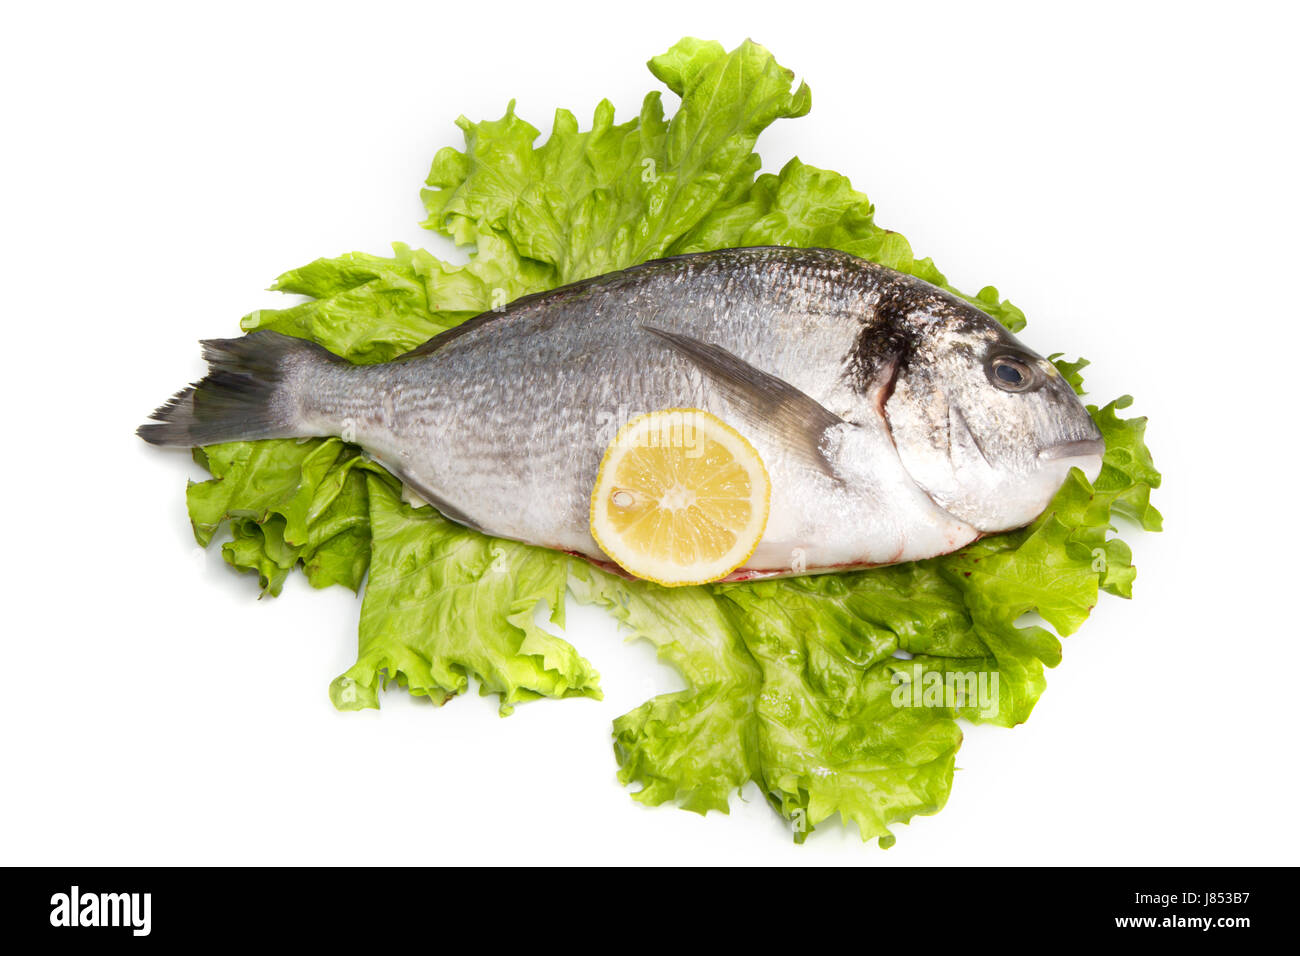 Il cibo del ristorante aliment isolato closeup animale mediterraneo di acqua salata Foto Stock